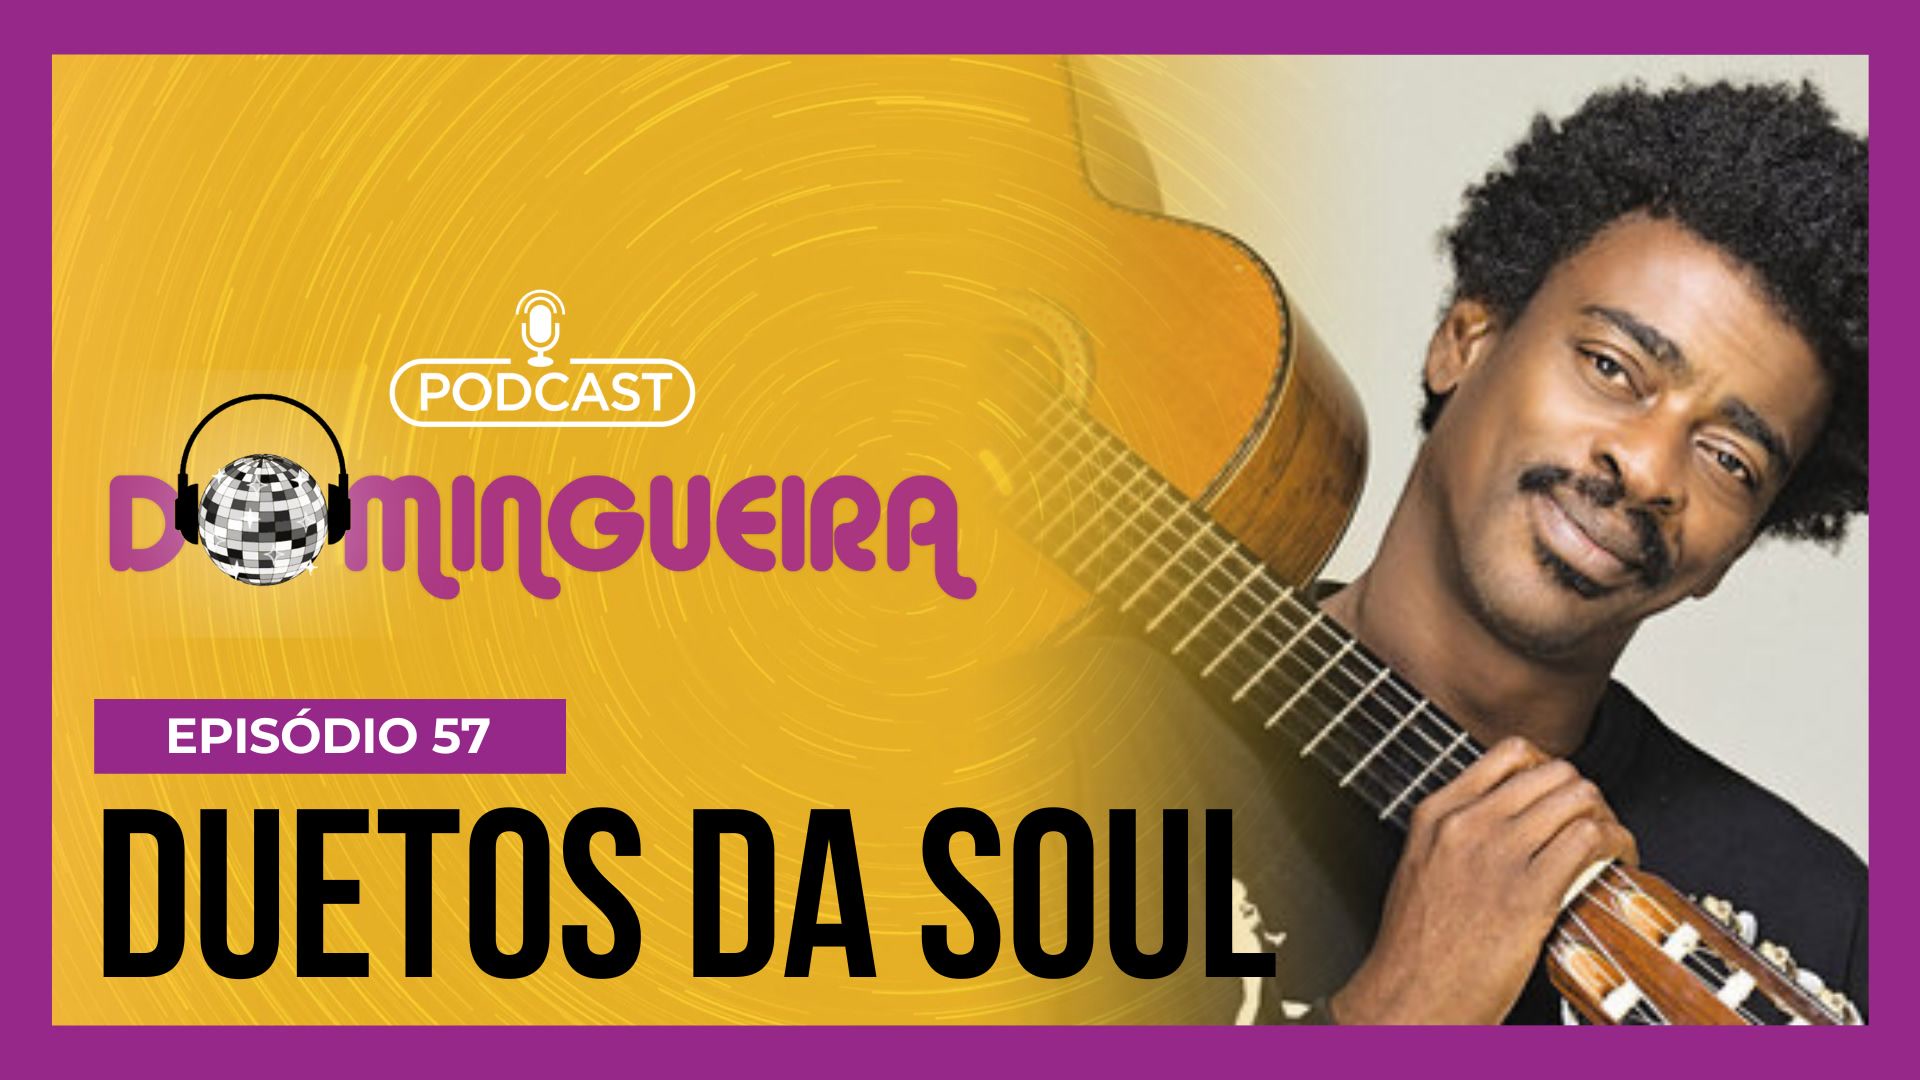 Vídeo: Podcast Domingueira : Duetos do Soul no Brasil